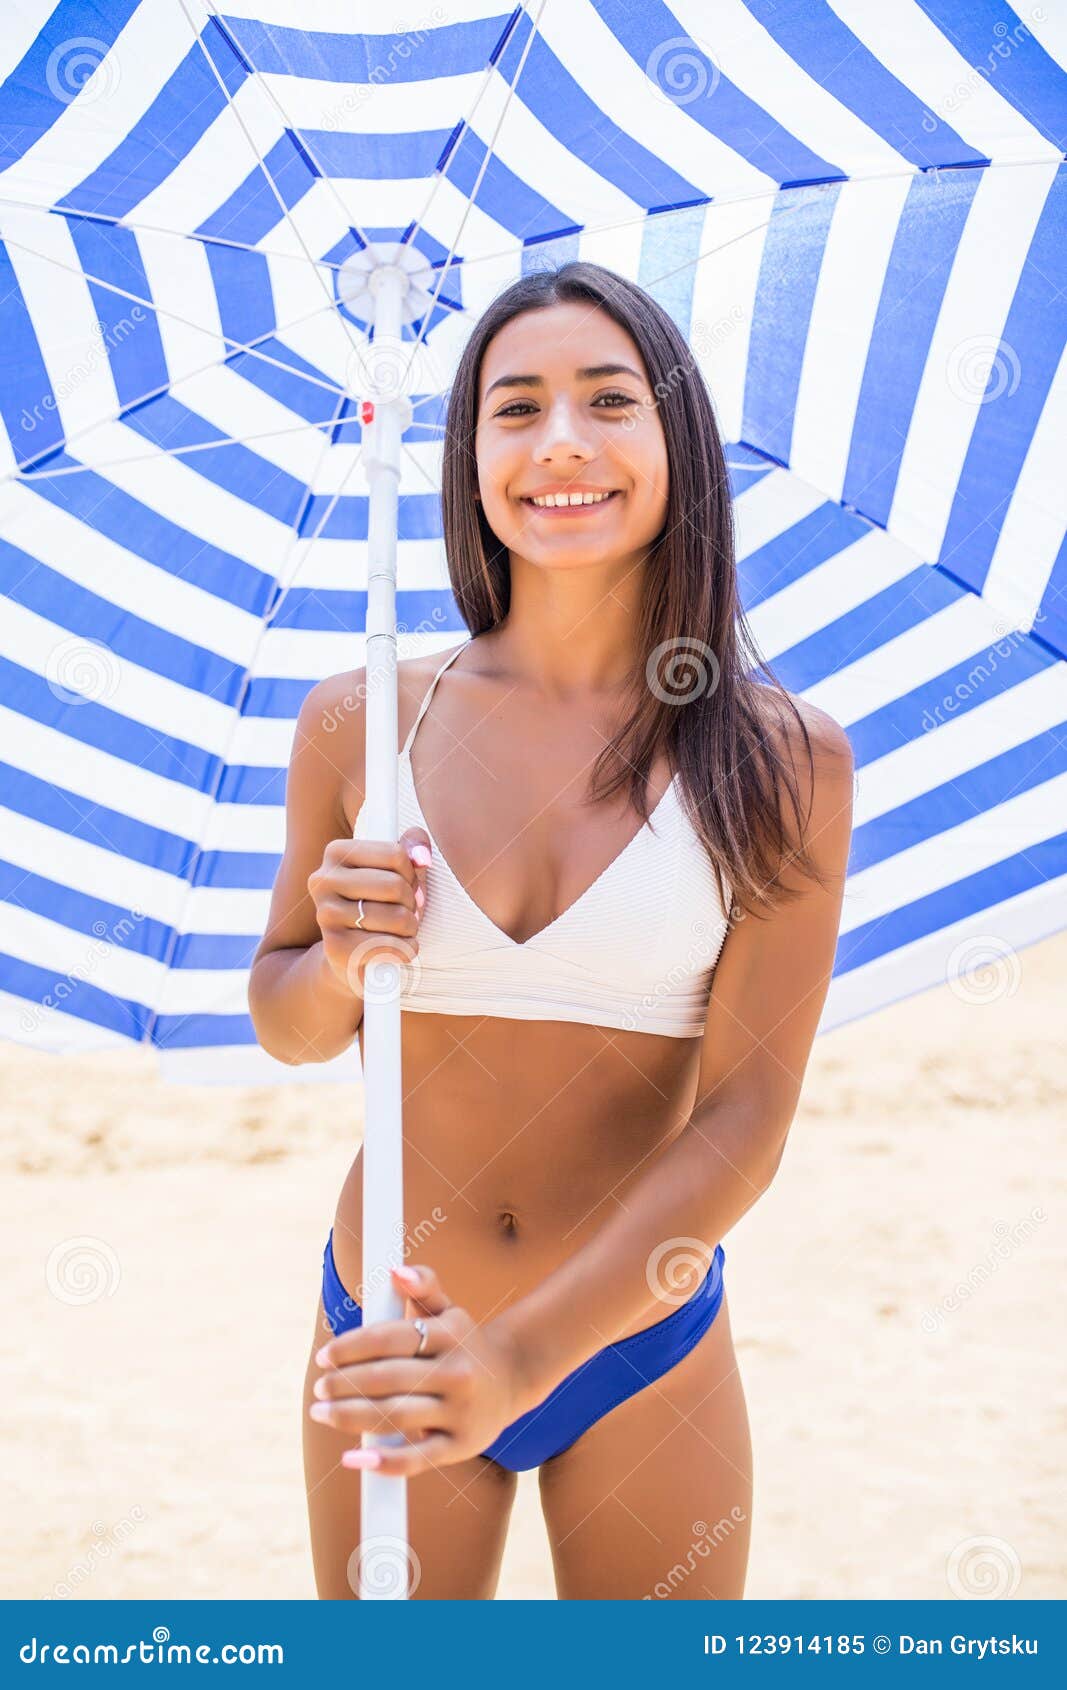 Bikini Girl In Latin